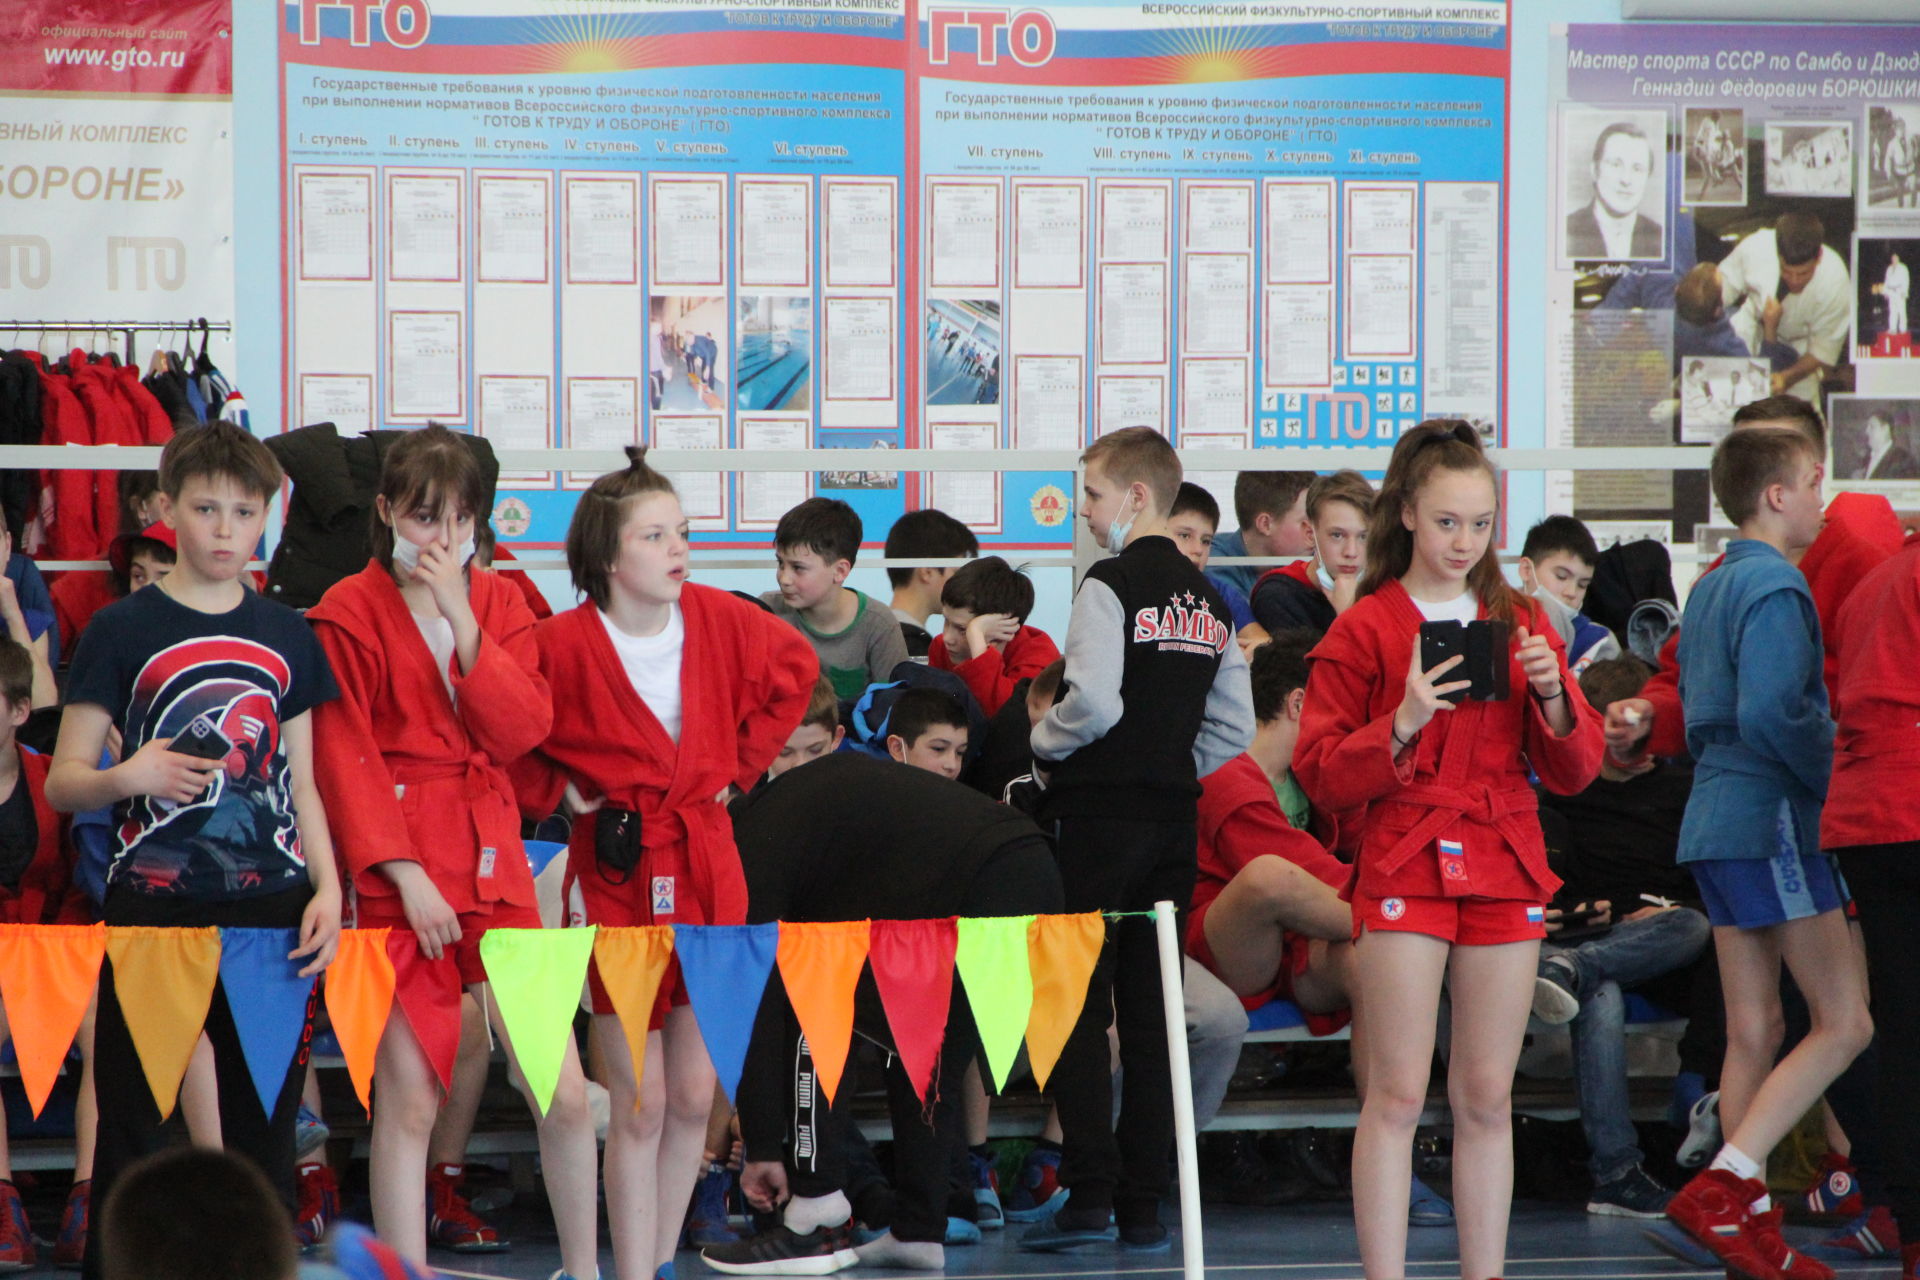 Первенство Татарстана по самбо среди мальчиков и девочек 12-14 лет в Болгаре